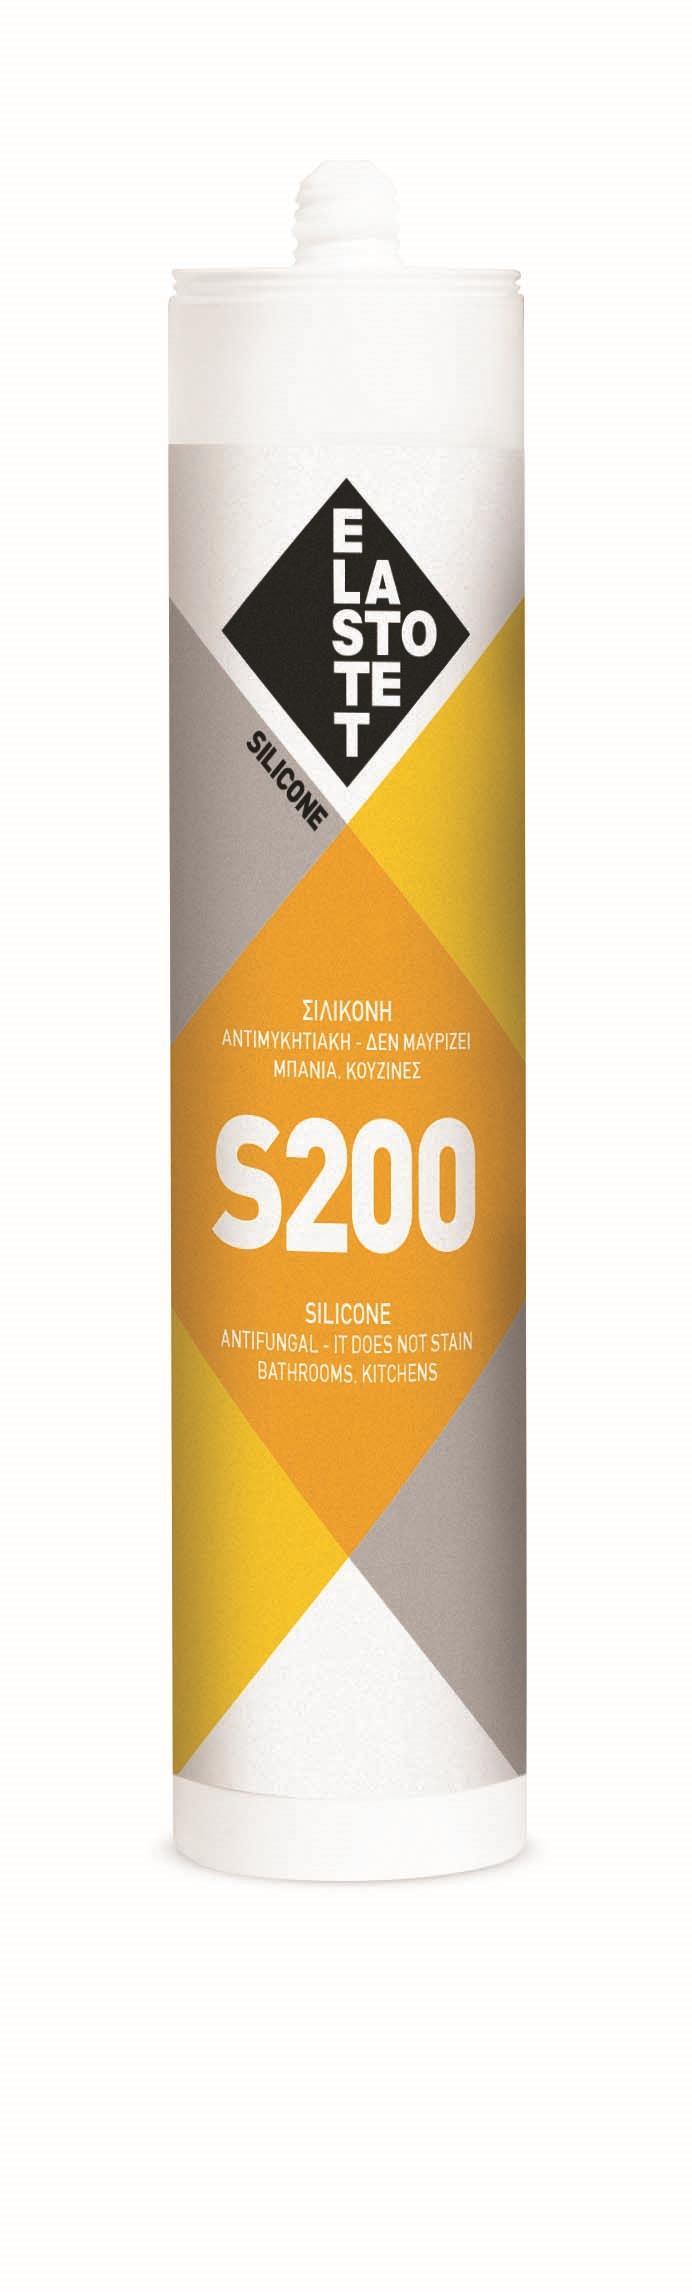 Σιλικόνη αντιμυκητιακή S-200 25τεμ φύσιγγα 280ml διάφανη P.00527